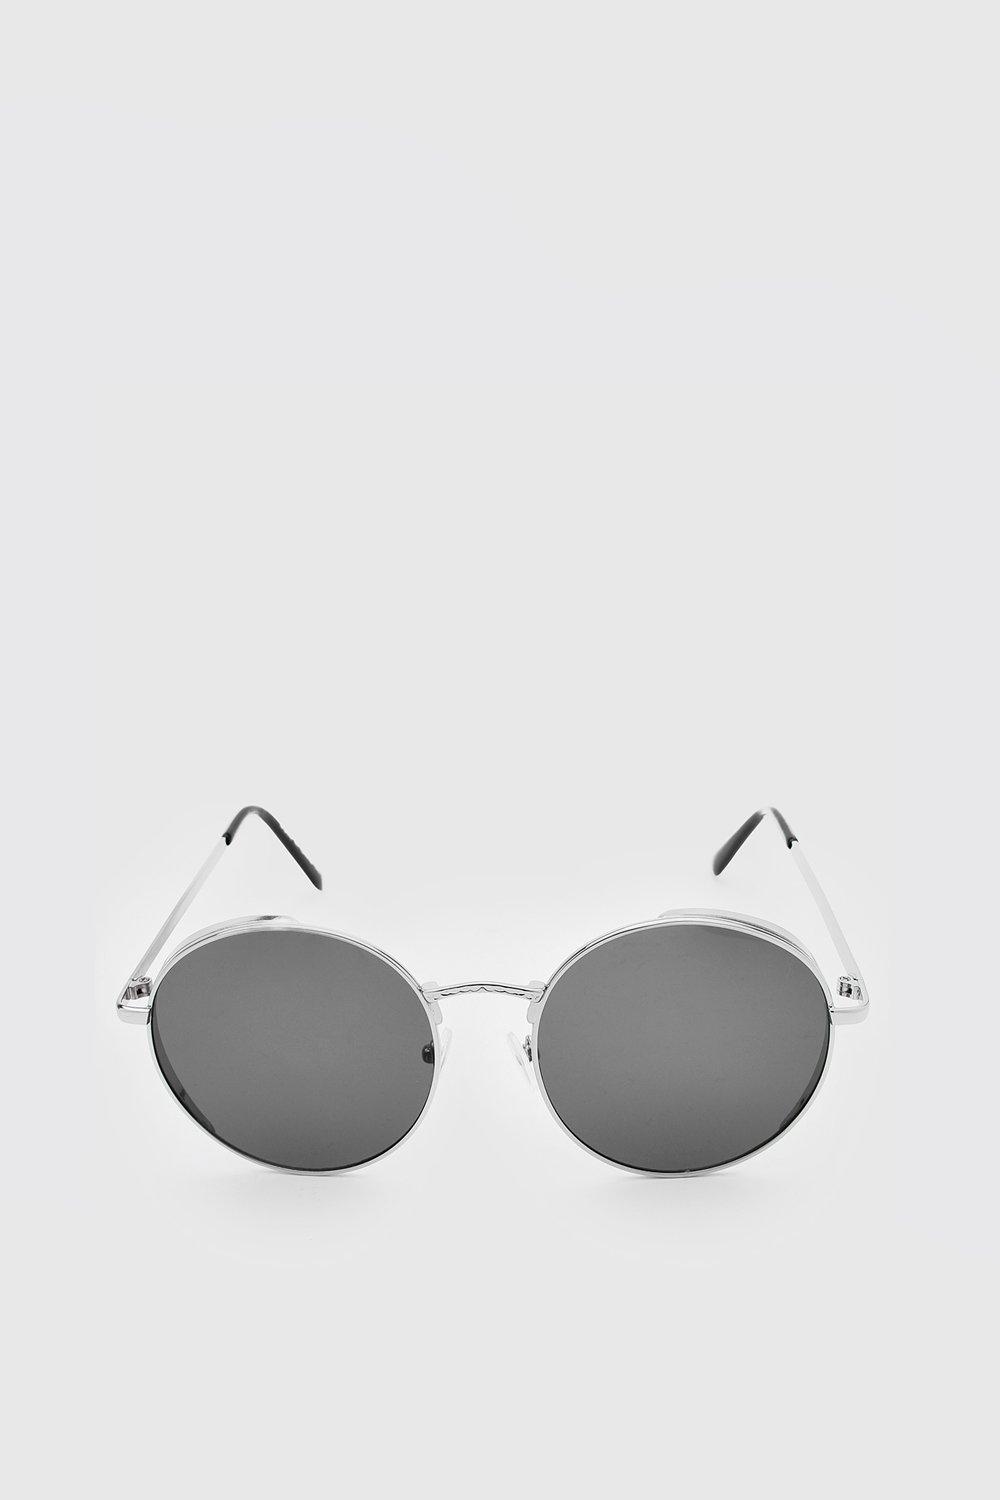 1960s Sunglasses | 70s Sunglasses, 70s Glasses